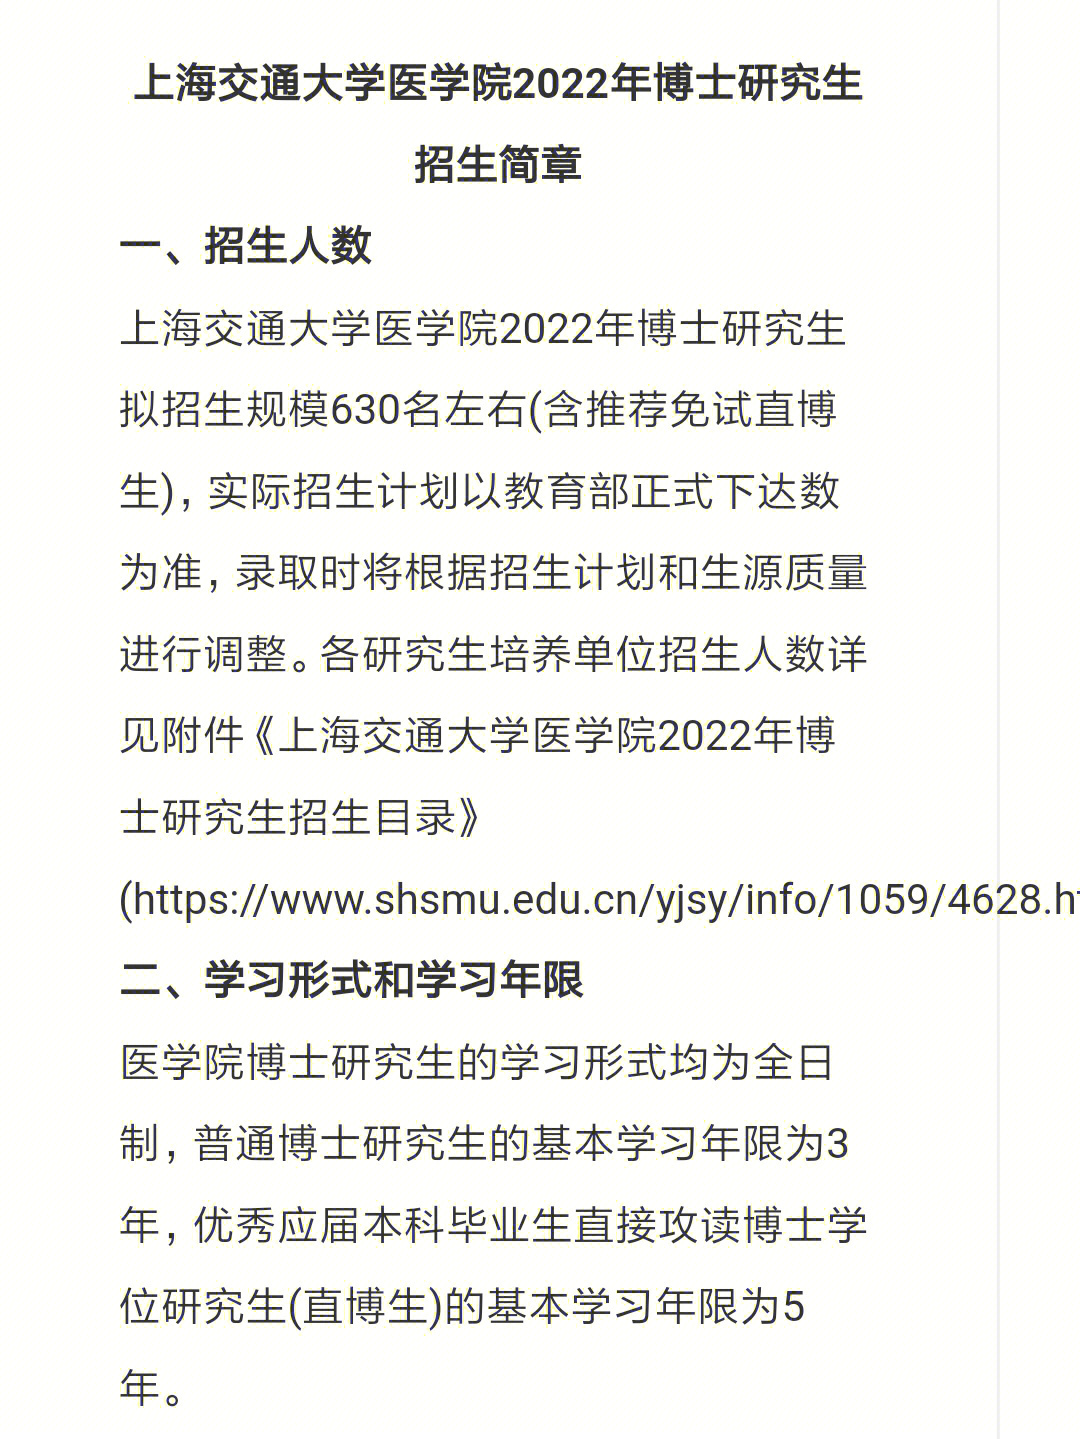 上海交通大学医学院2022年博士研究生招生简章